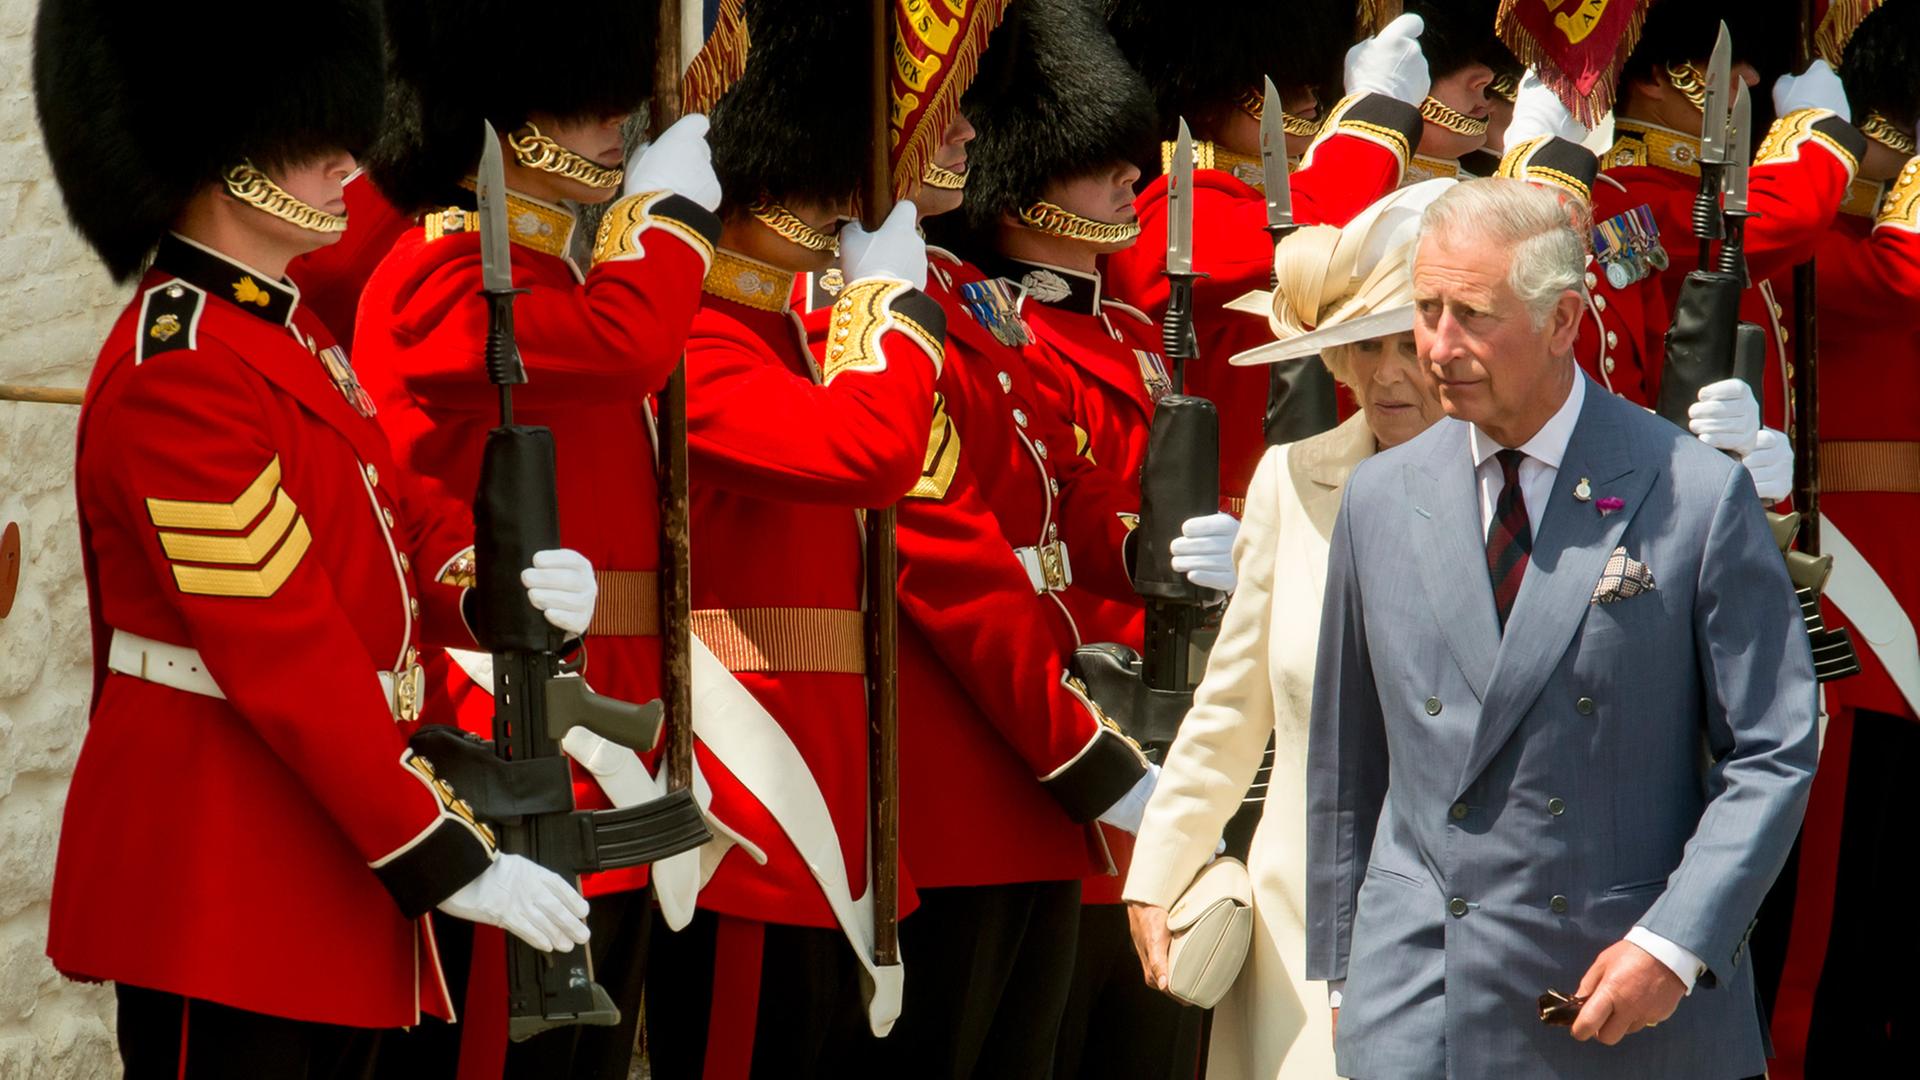 Camilla, Duchess of Cornwall und Prince Charles, Prince of Wales bei Feierlichkeiten anlässlich des 200. Jahrestages des britischen Sieges in der Schlacht von Waterloo; Aufnahme vom 17. Juni 2015